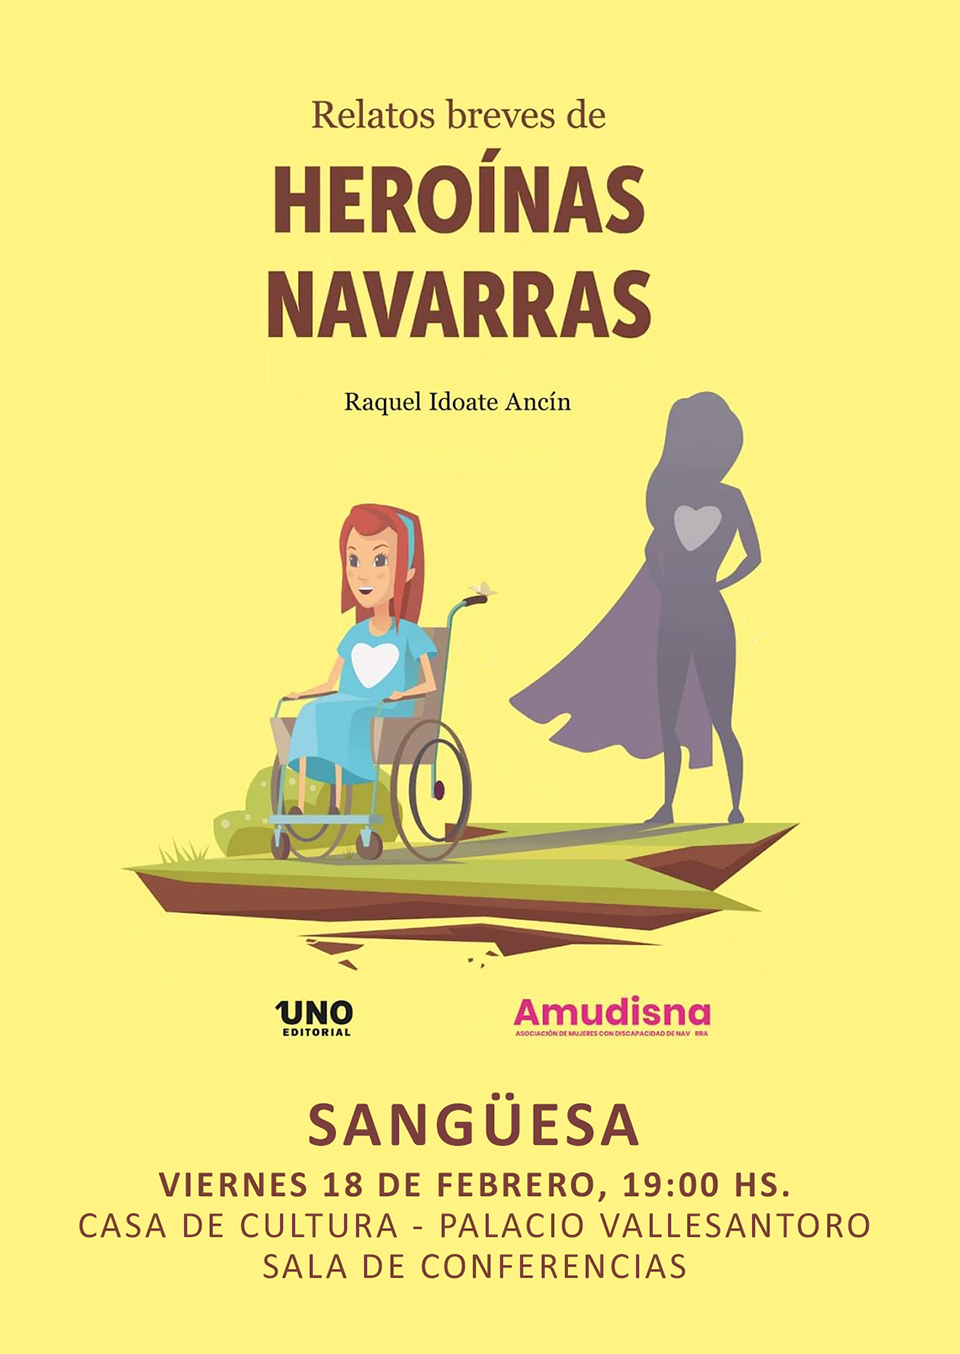 La Asociación de Mujeres con Discapacidad de Navarra presenta en Sangüesa "Heroínas Navarras", relatos breves de navarras entre los siglos XVI y XXI